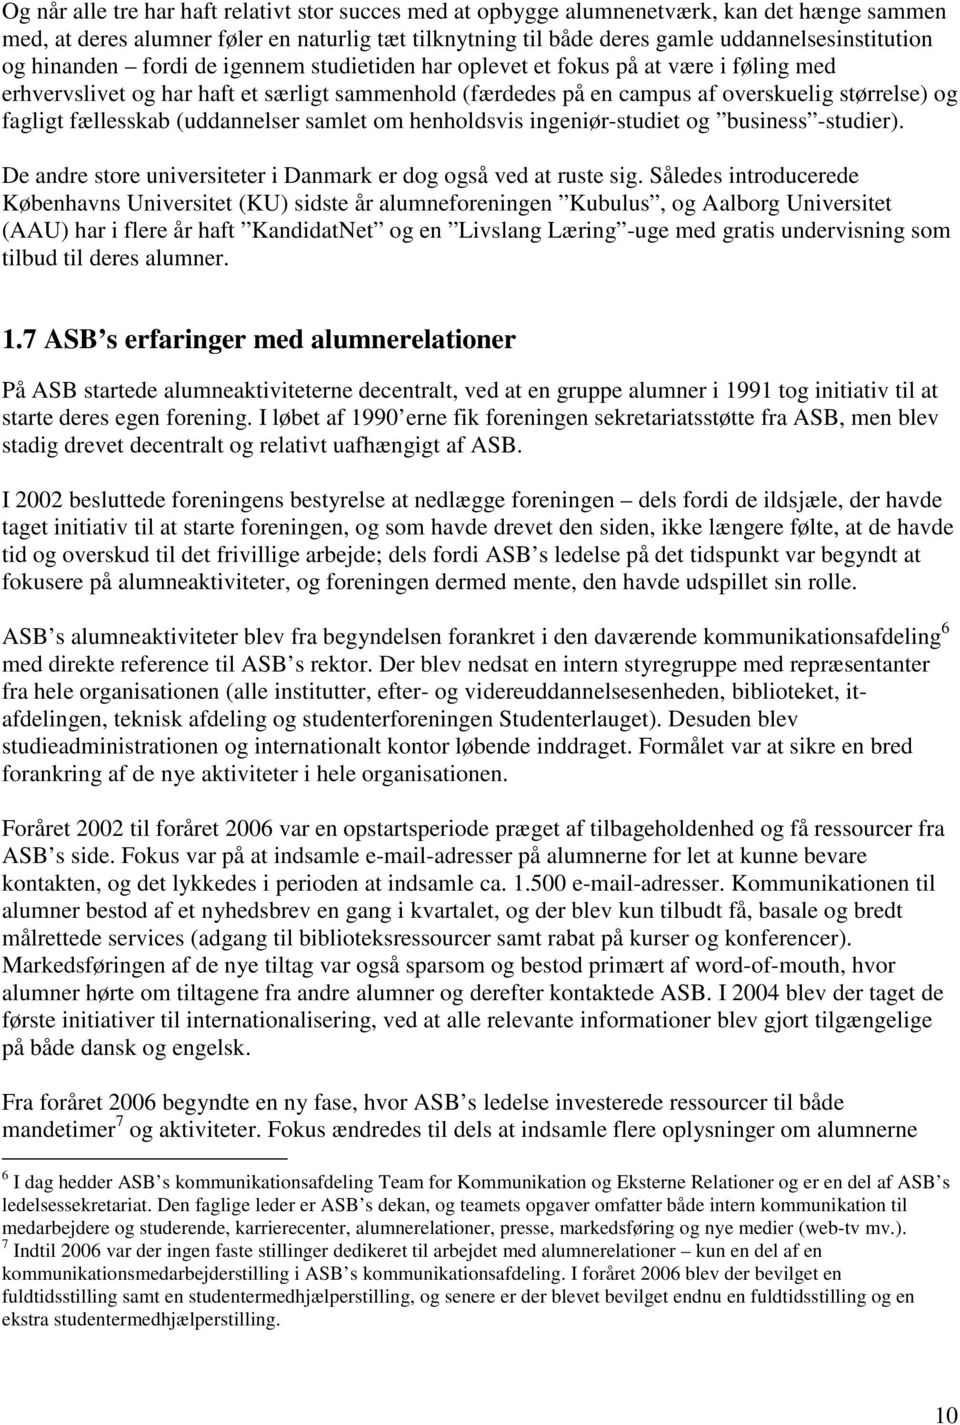 Aarhus Universitets alumnerelationer. - en analyse af den aktuelle  situation og anbefalinger til den fremtidige indsats - PDF Free Download